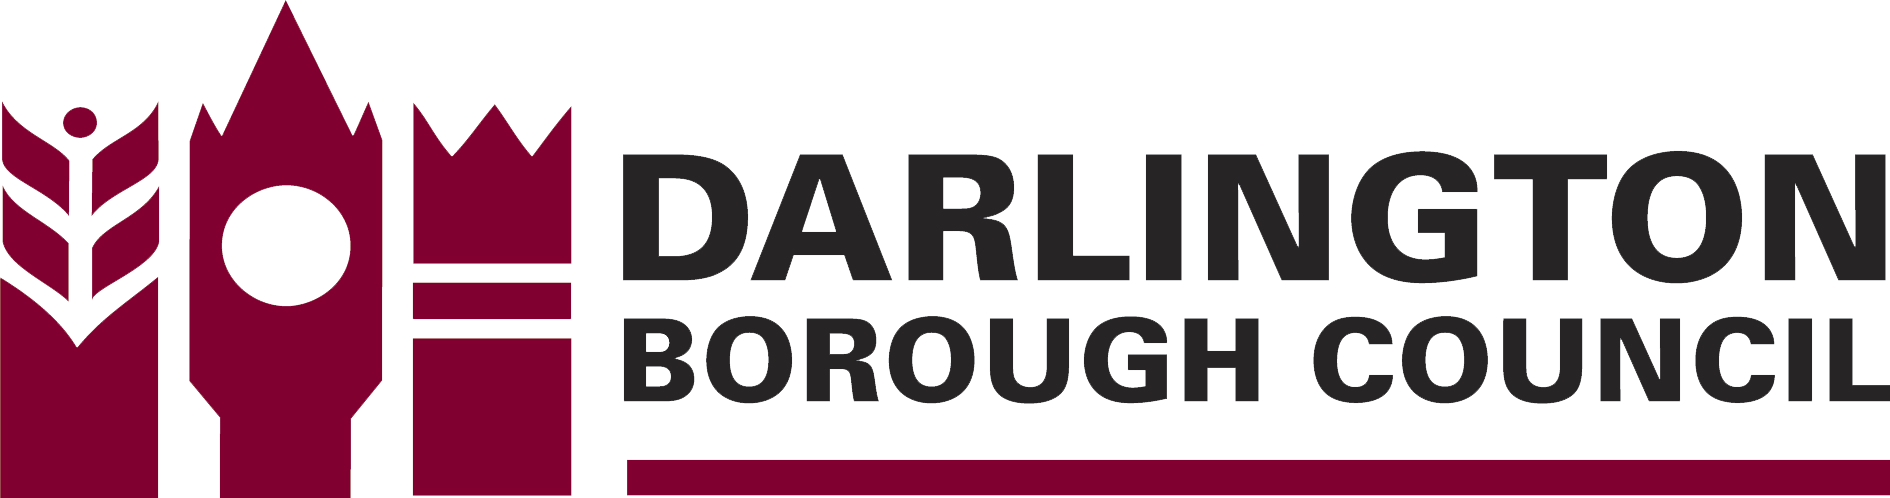 Darlington borough council logo